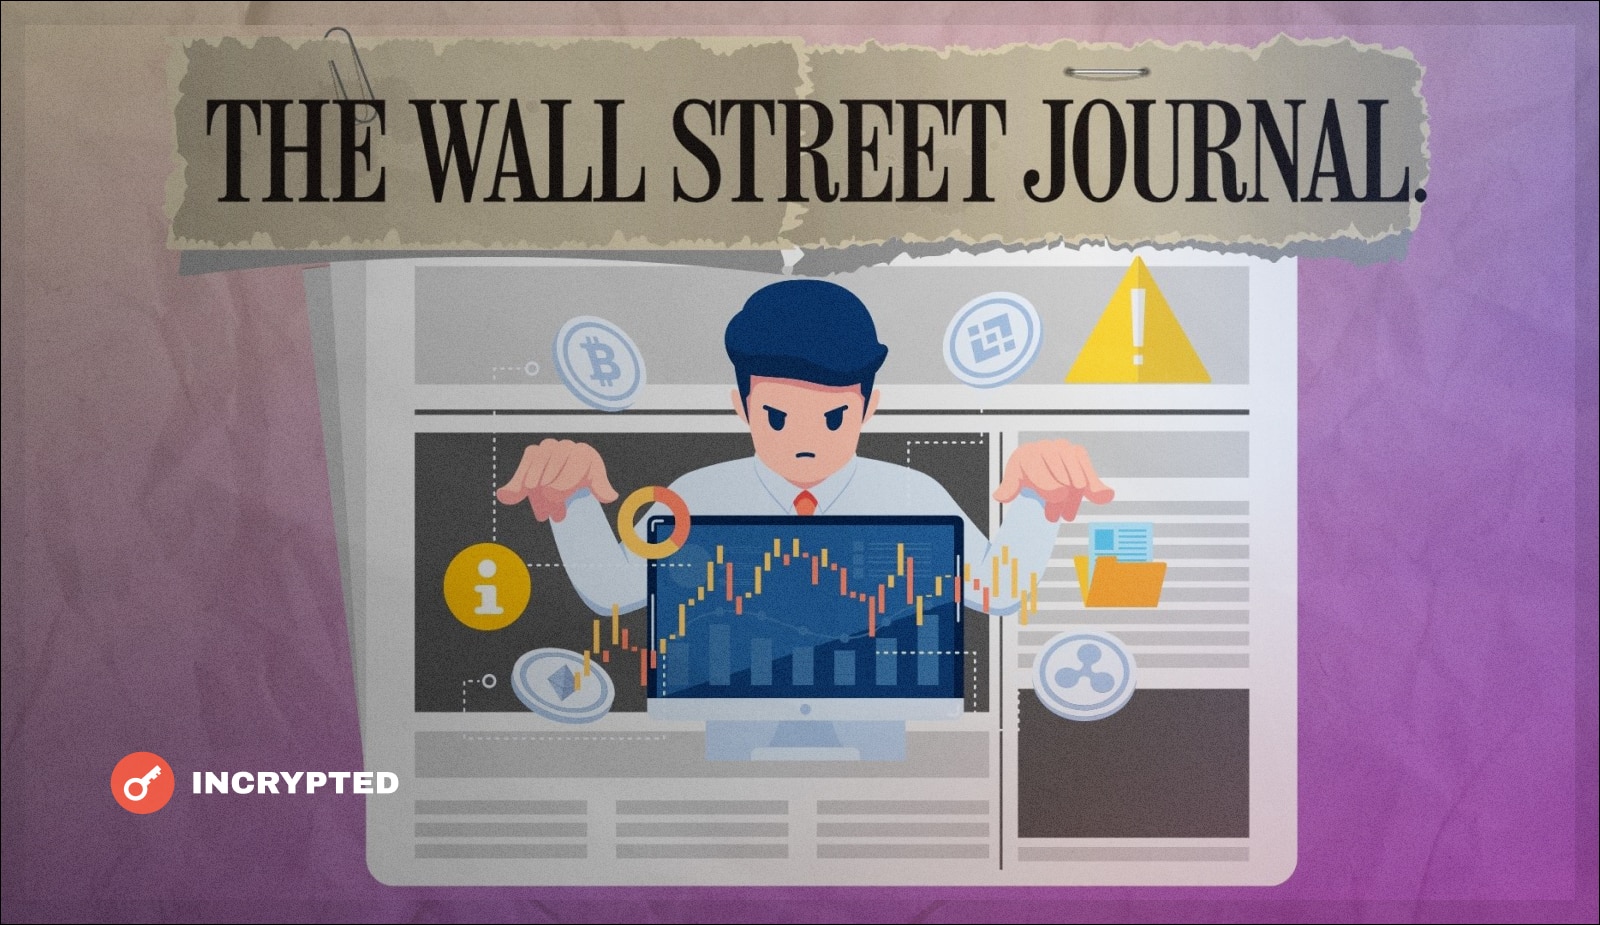 В новом отчете Wall Street Journal обвинил некоторых трейдеров в инсайдерской торговле